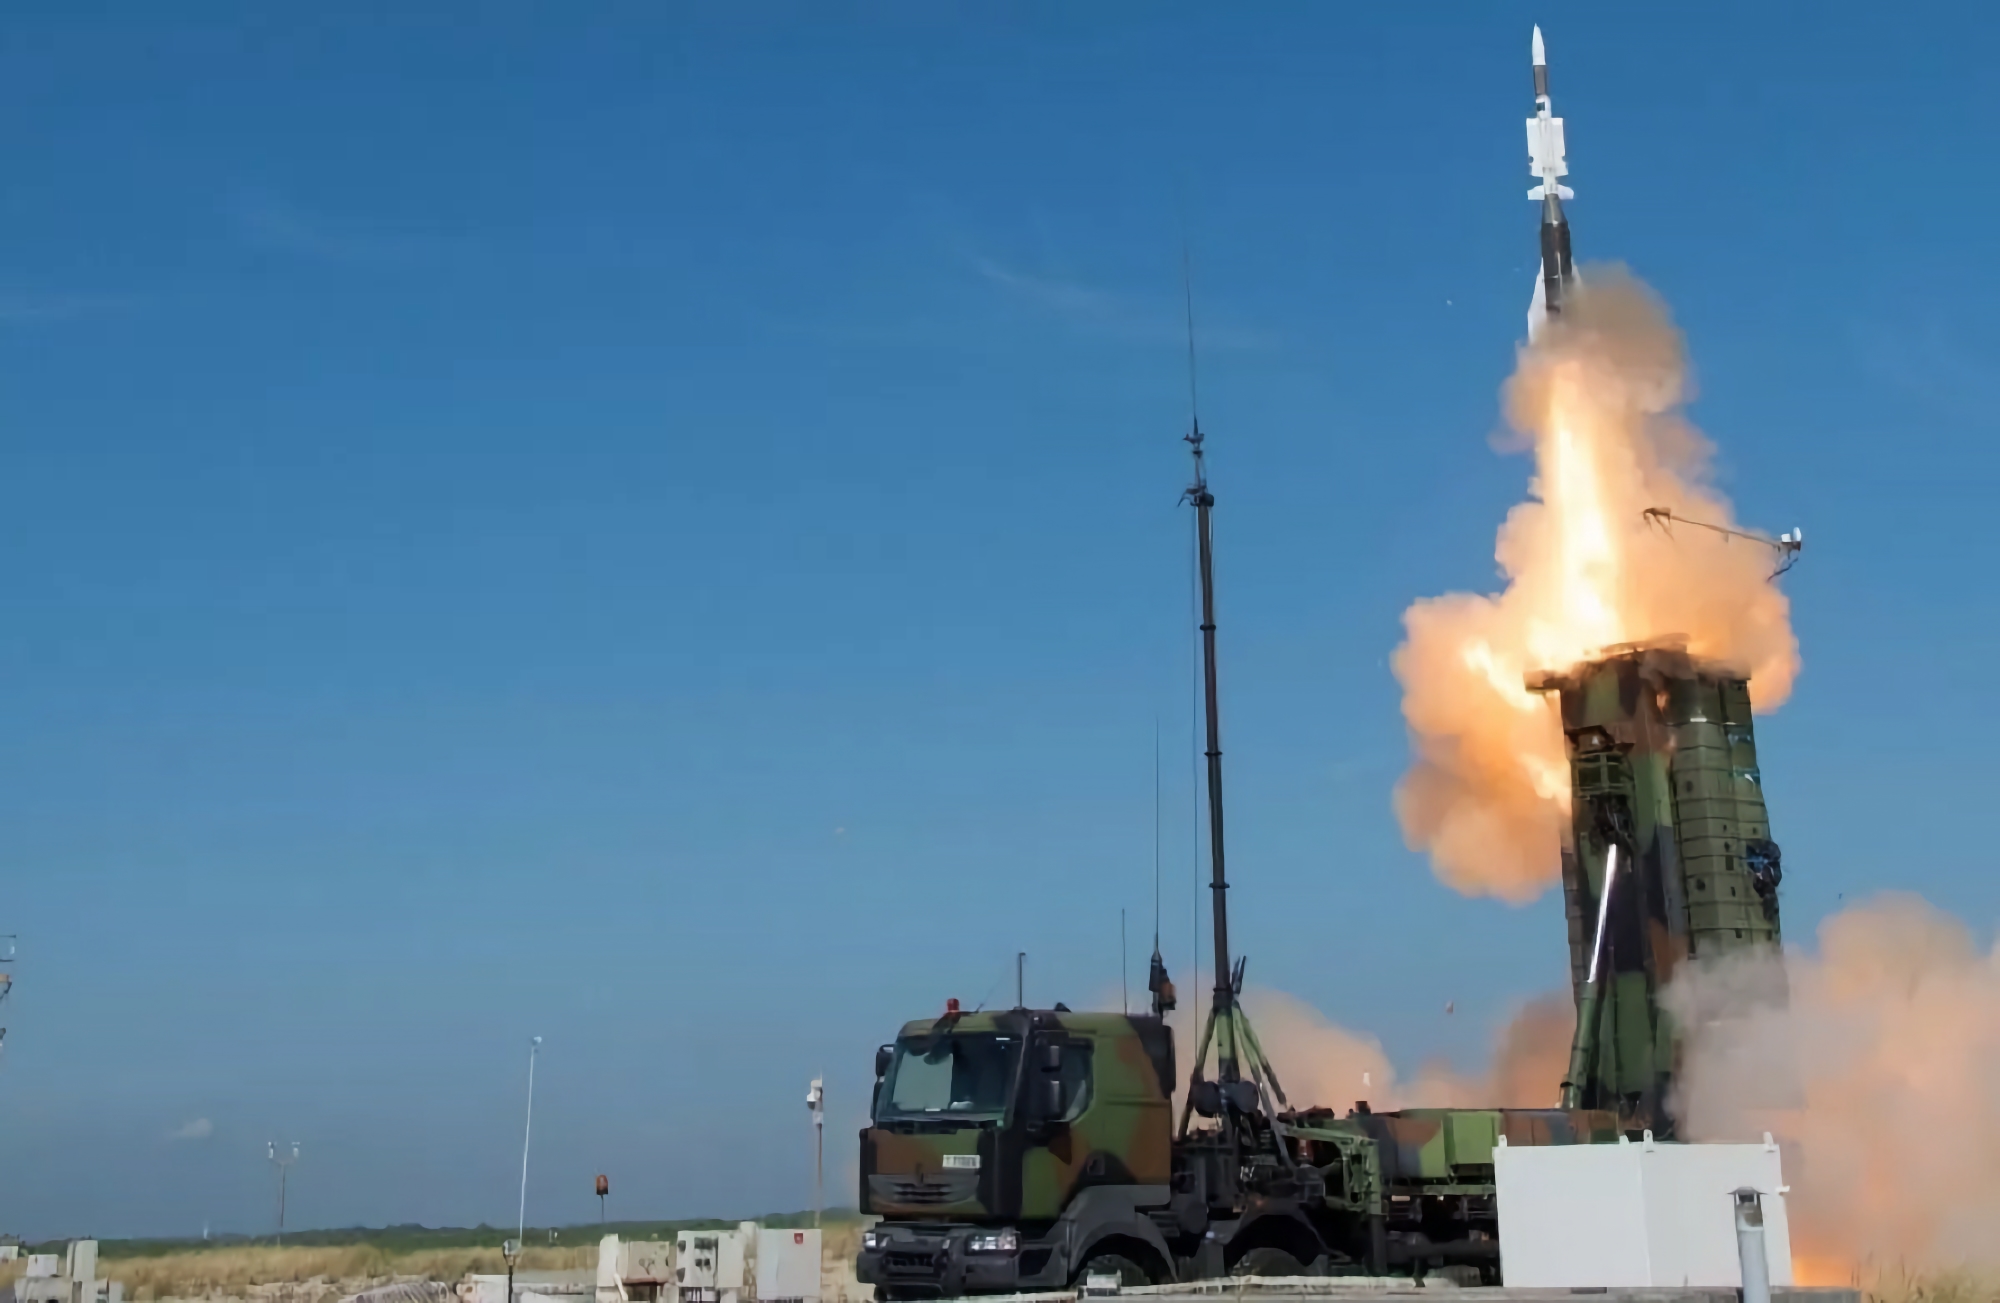 L'AFU utilizza missili Aster-15 e Aster-30 con il sistema SAMP-T, che possono agganciare bersagli aerei fino a 100 chilometri di distanza.